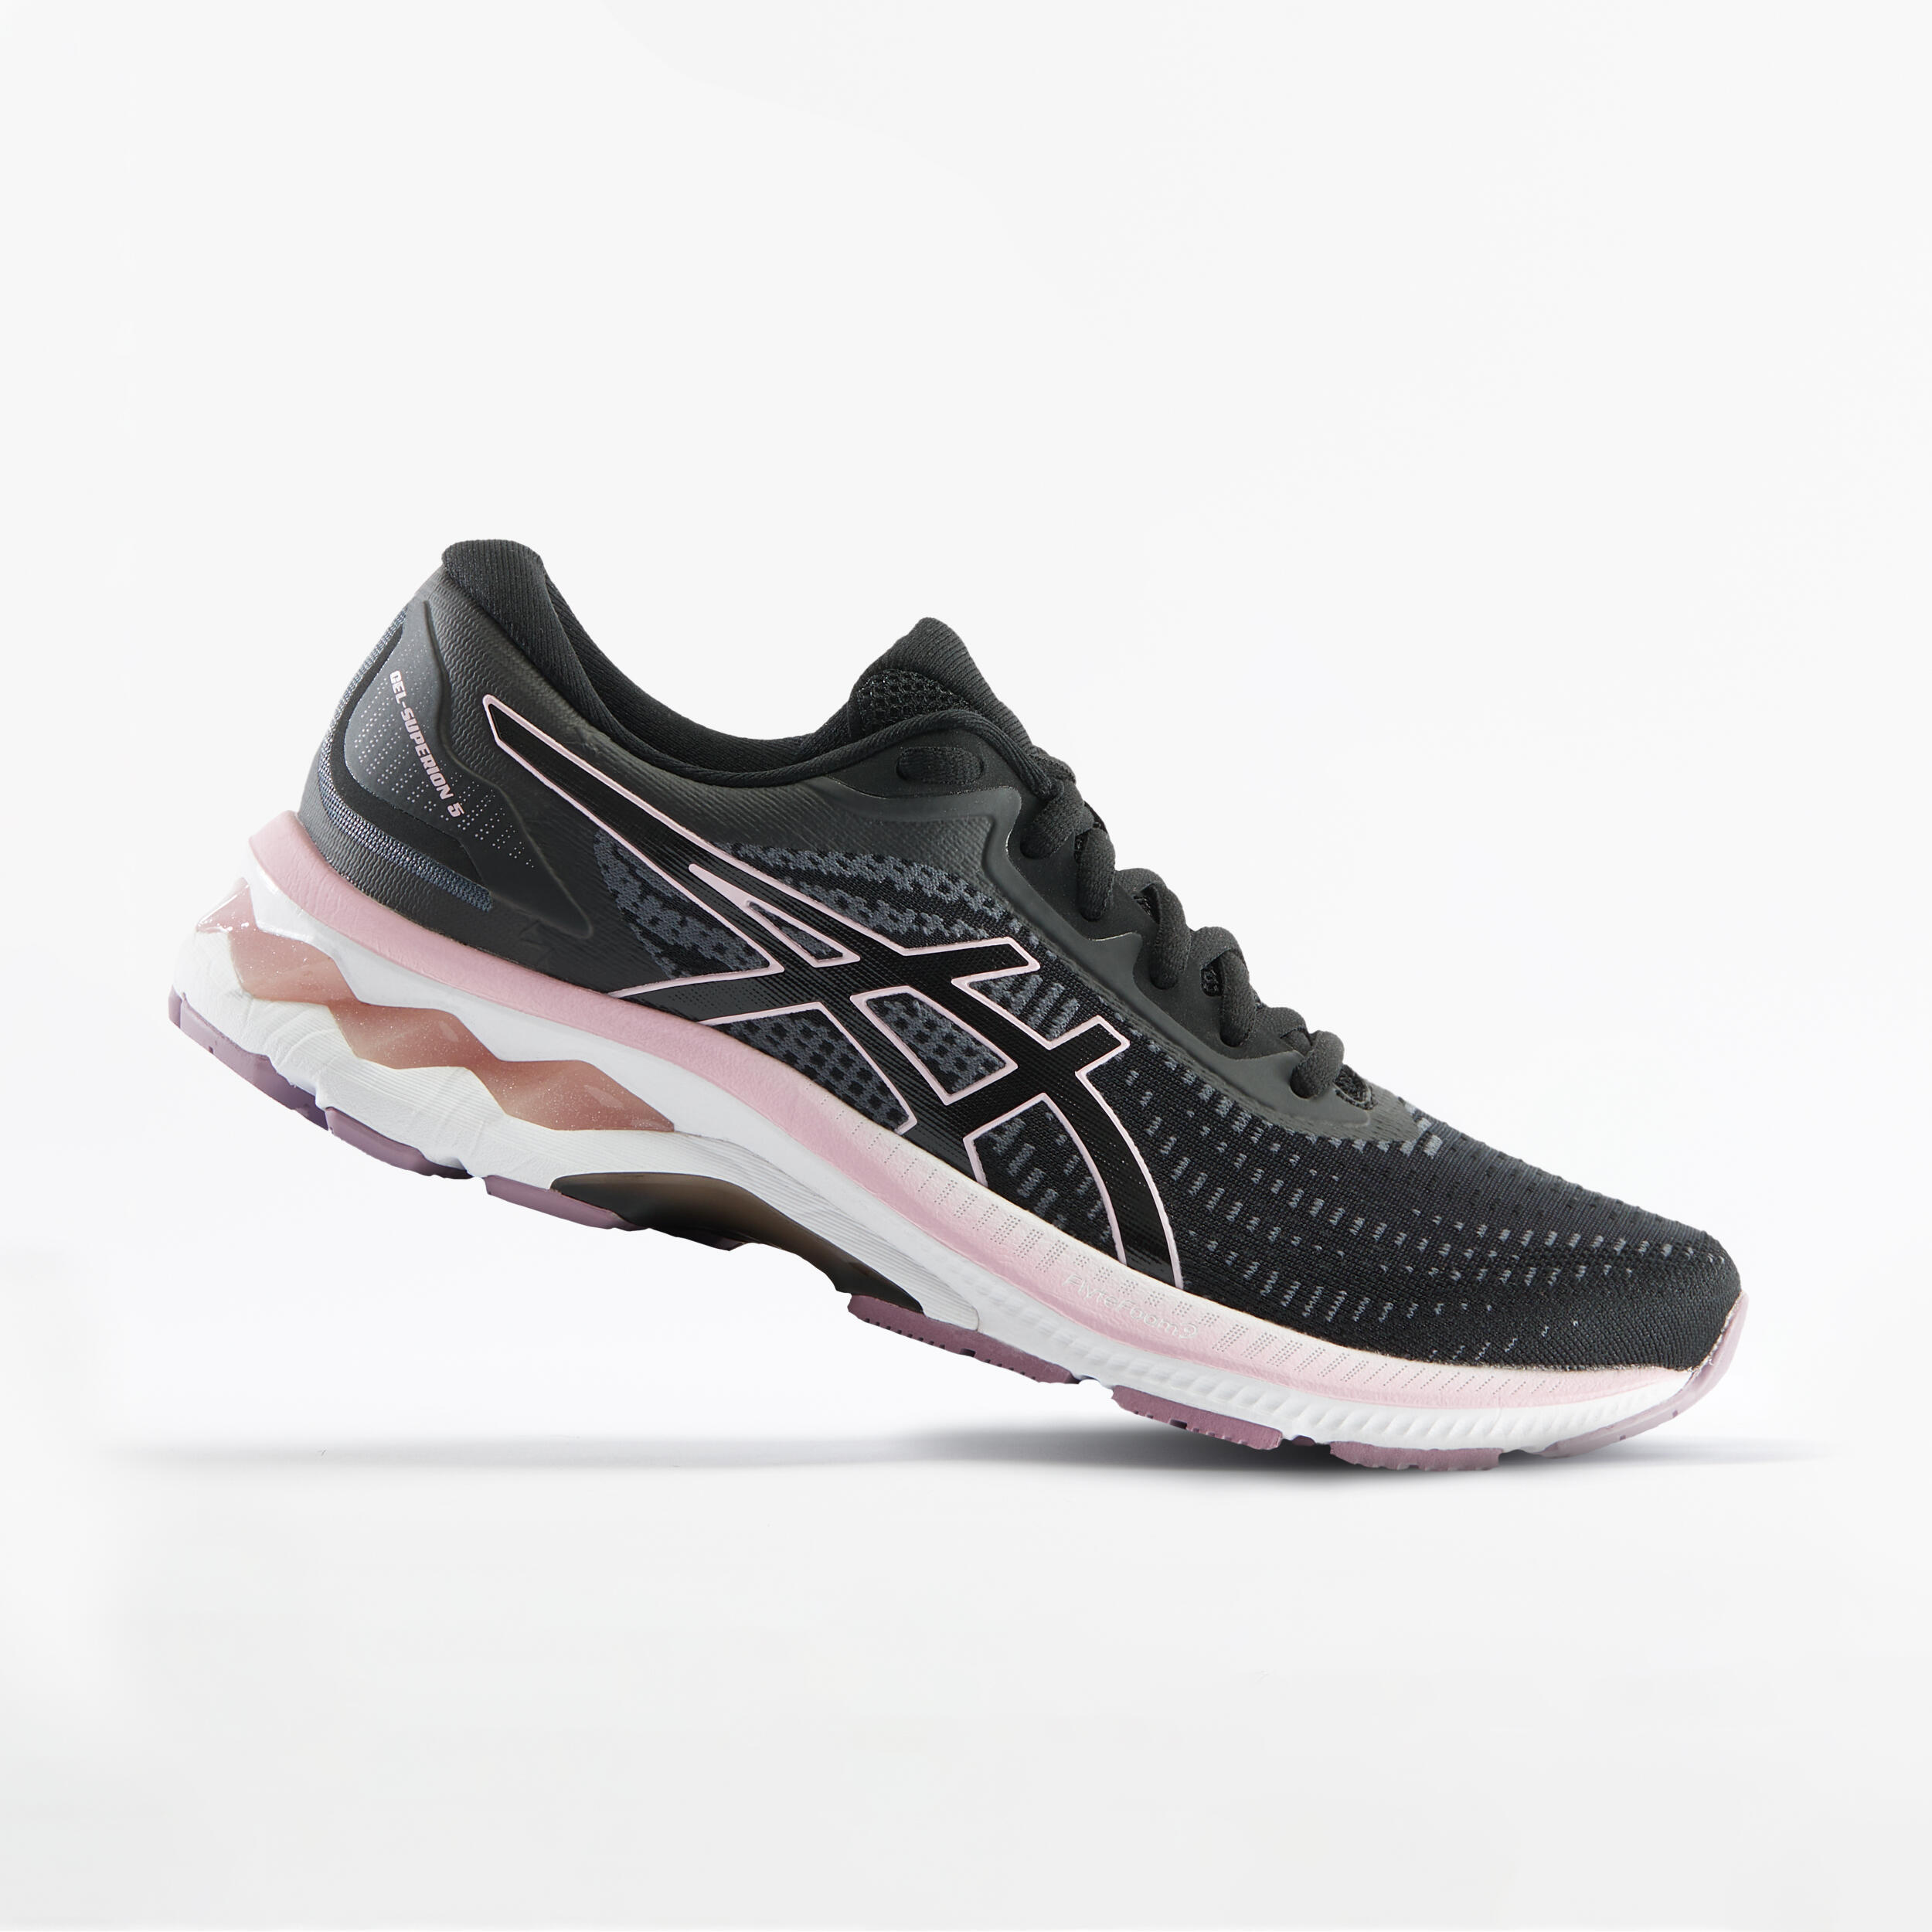 قهوة ستاربكس Women's Running Shoes Asics Gel Superion 5 - black/pink - Decathlon قهوة ستاربكس